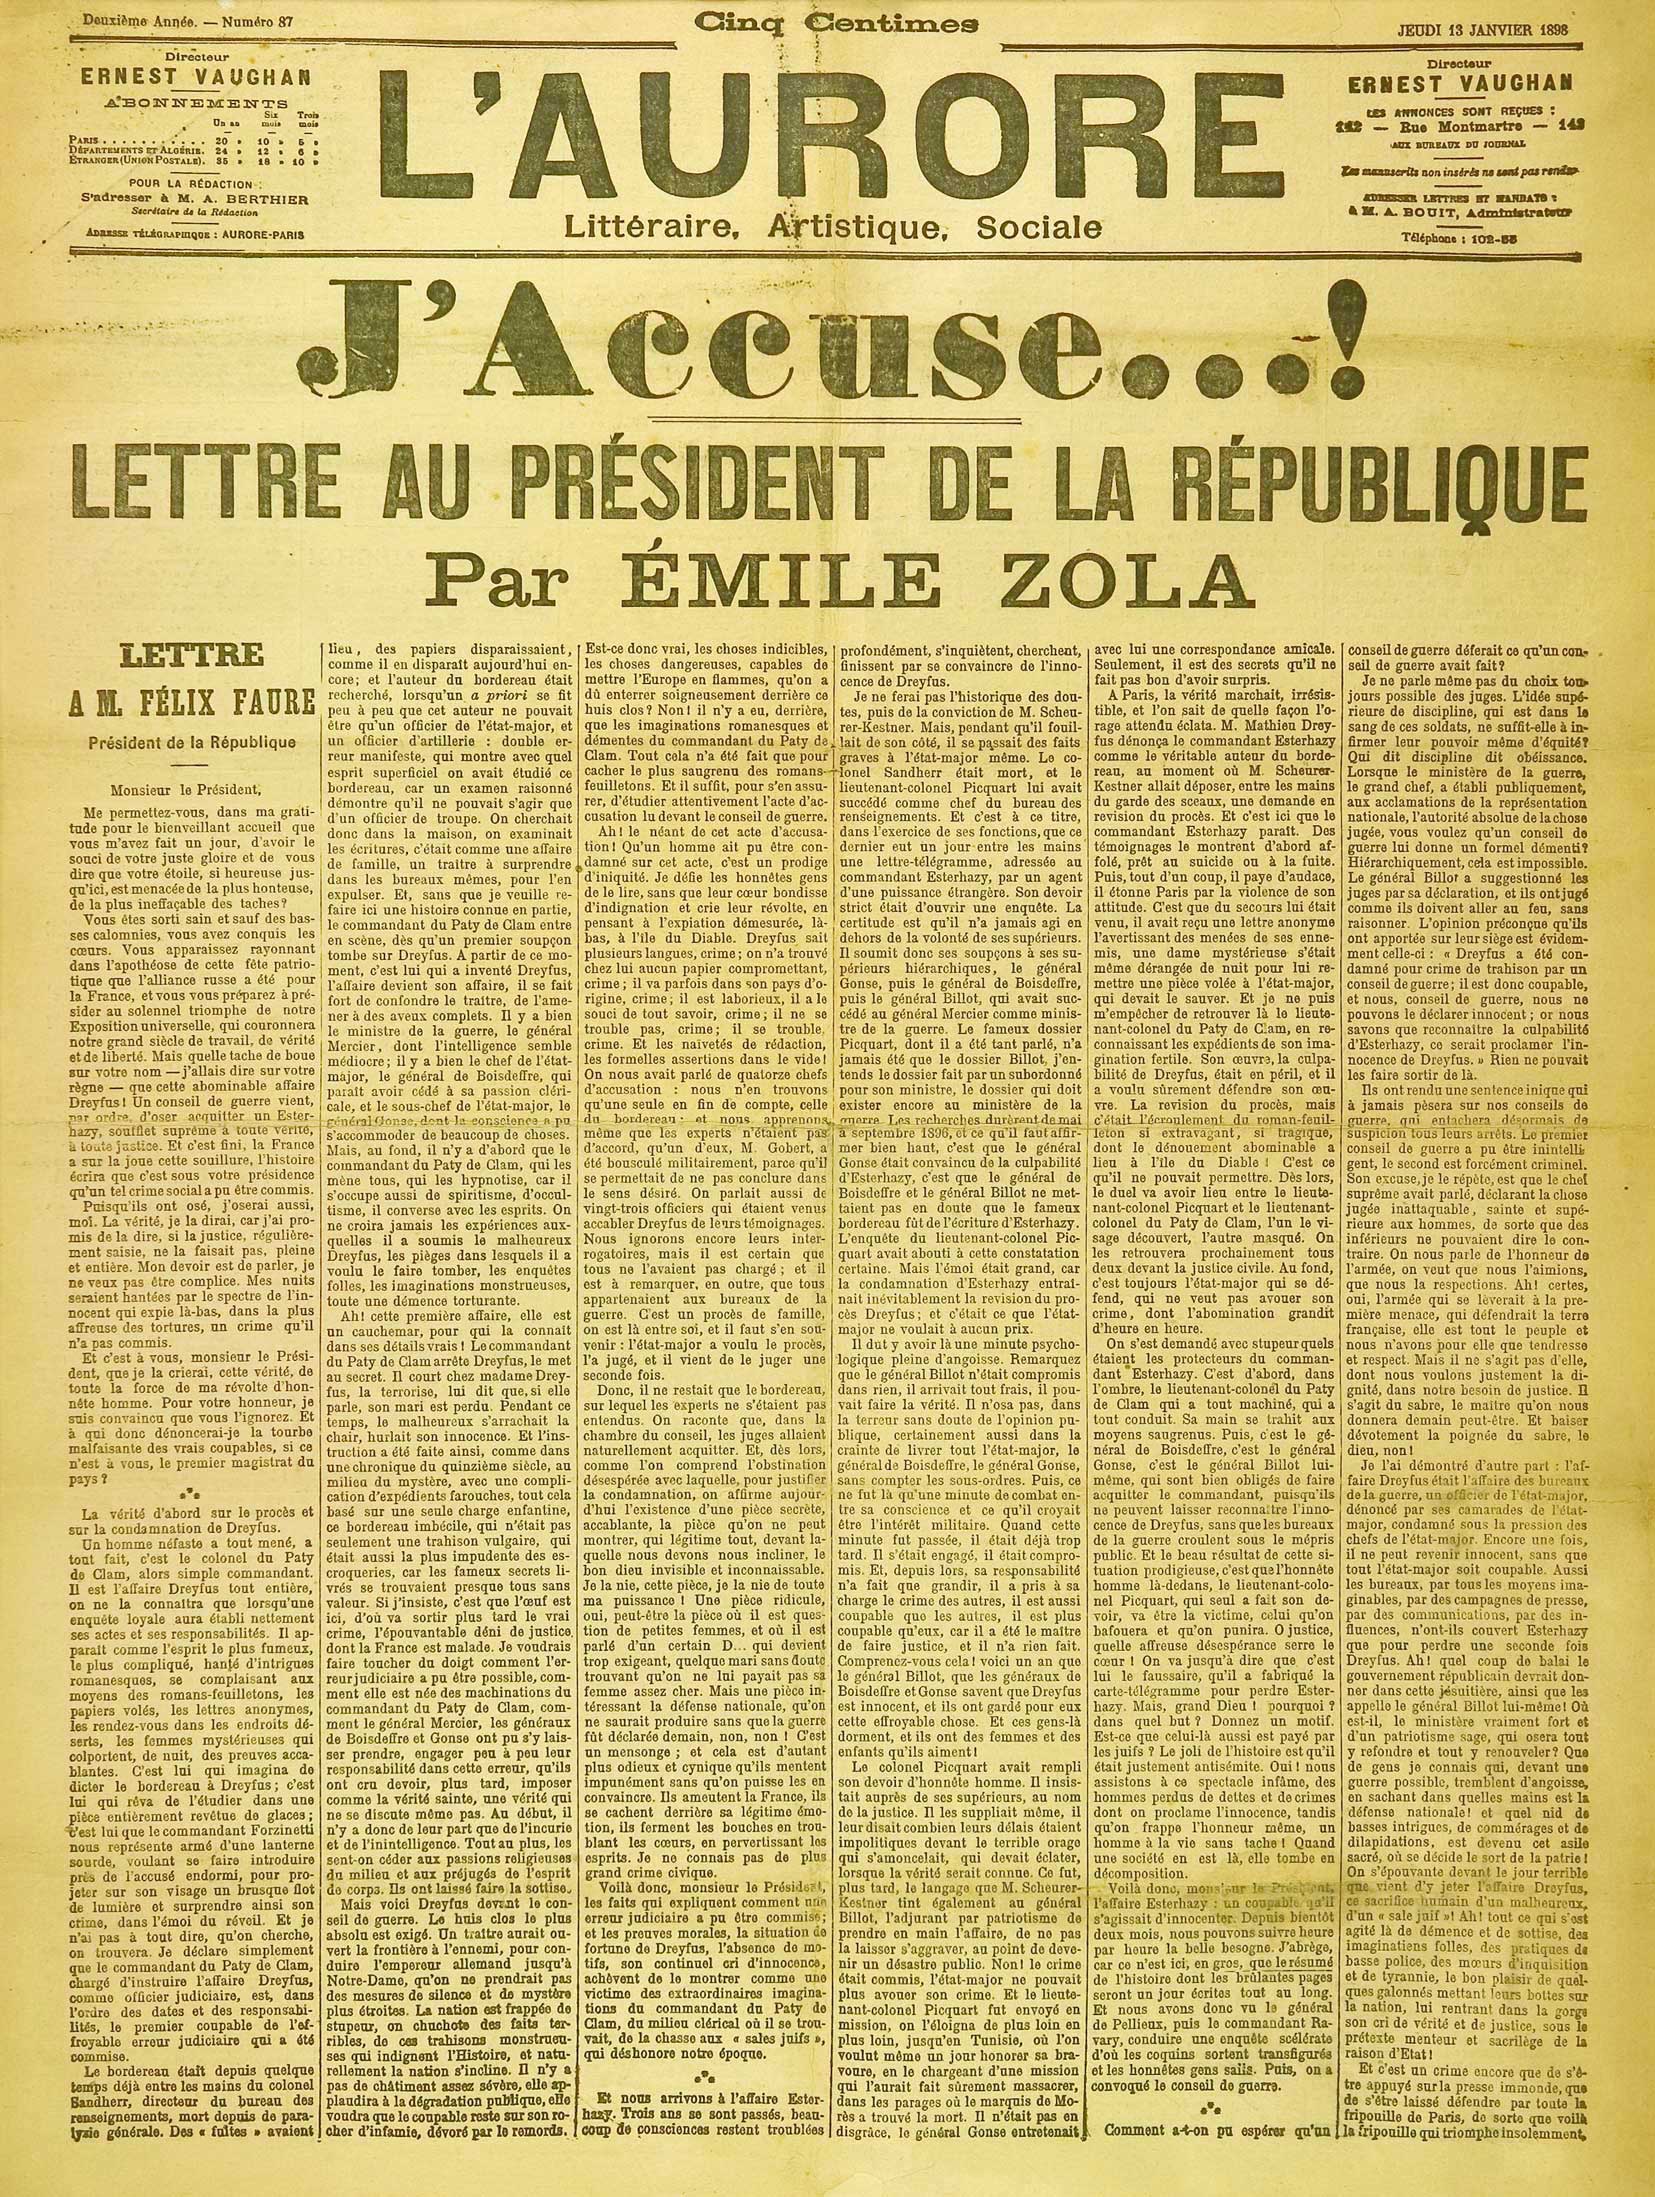 List otwarty pisarza Émile’a Zoli w obronie posądzanego o szpiegostwo kapitana Alfreda Dreyusa pod tytułem „J’Accuse!” (Oskarżam!) opublikowało na całej pierwszej stronie pismo „L’Aurore”, 13 stycznia 1898